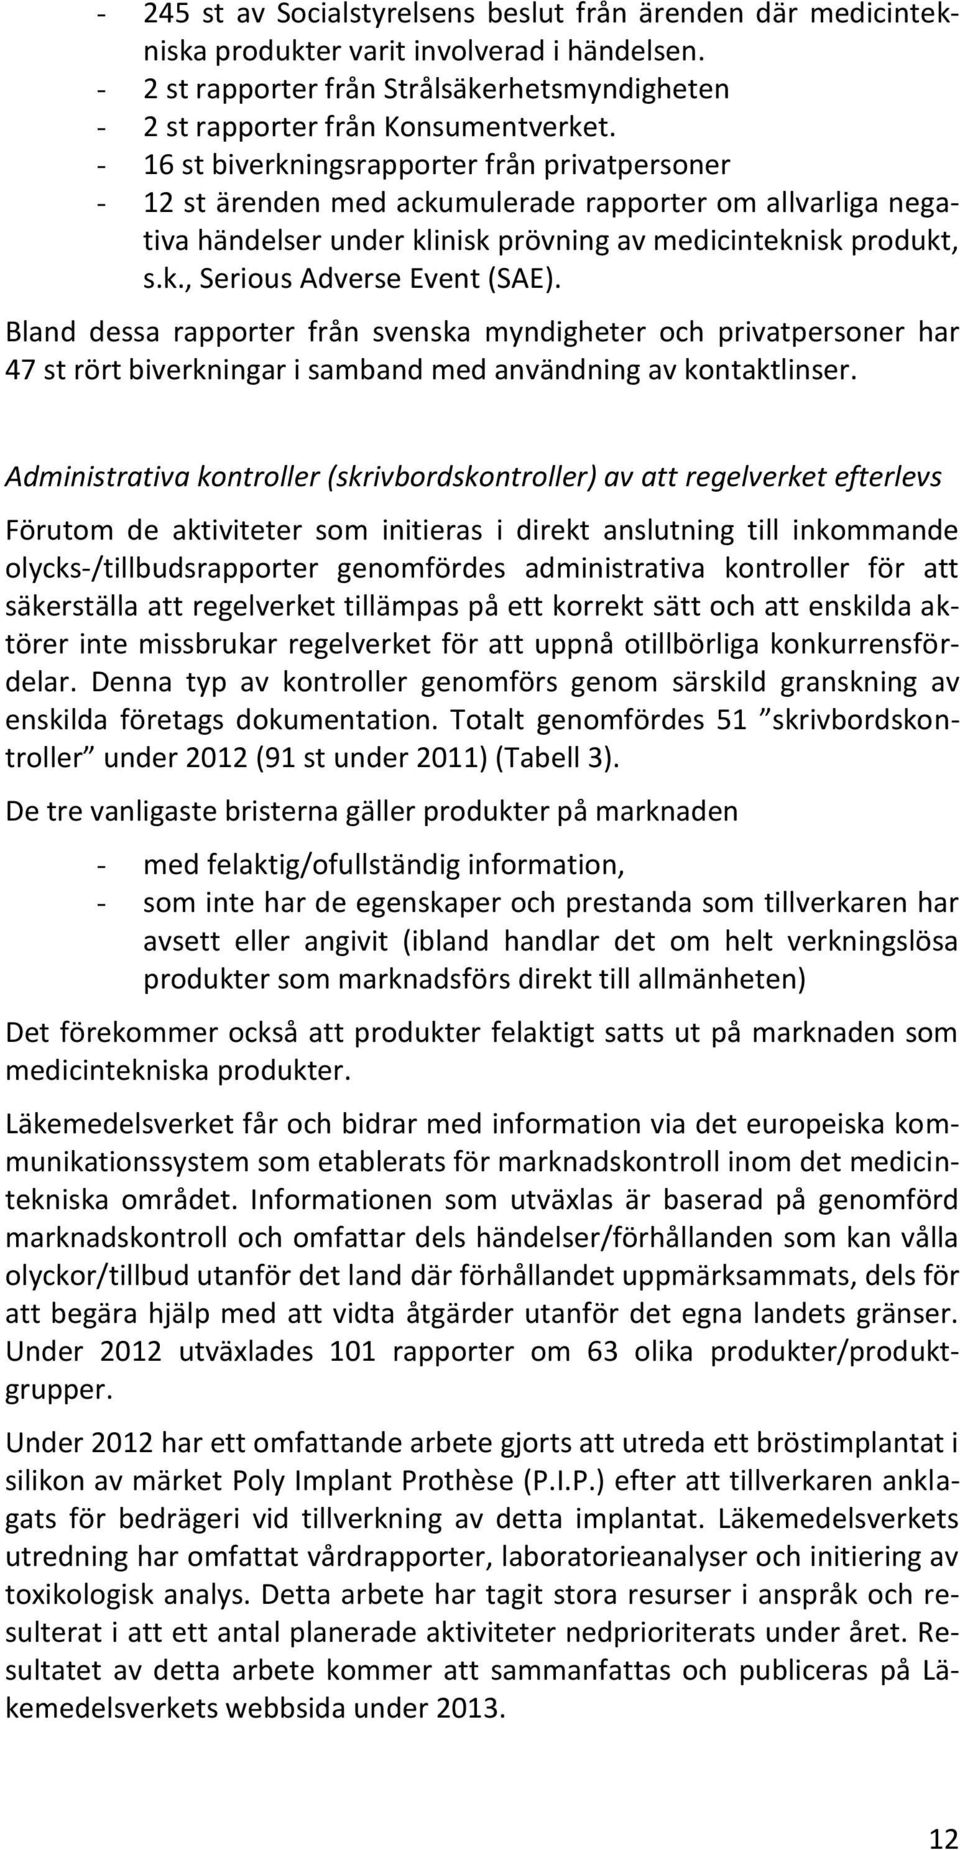 Bland dessa rapporter från svenska myndigheter och privatpersoner har 47 st rört biverkningar i samband med användning av kontaktlinser.